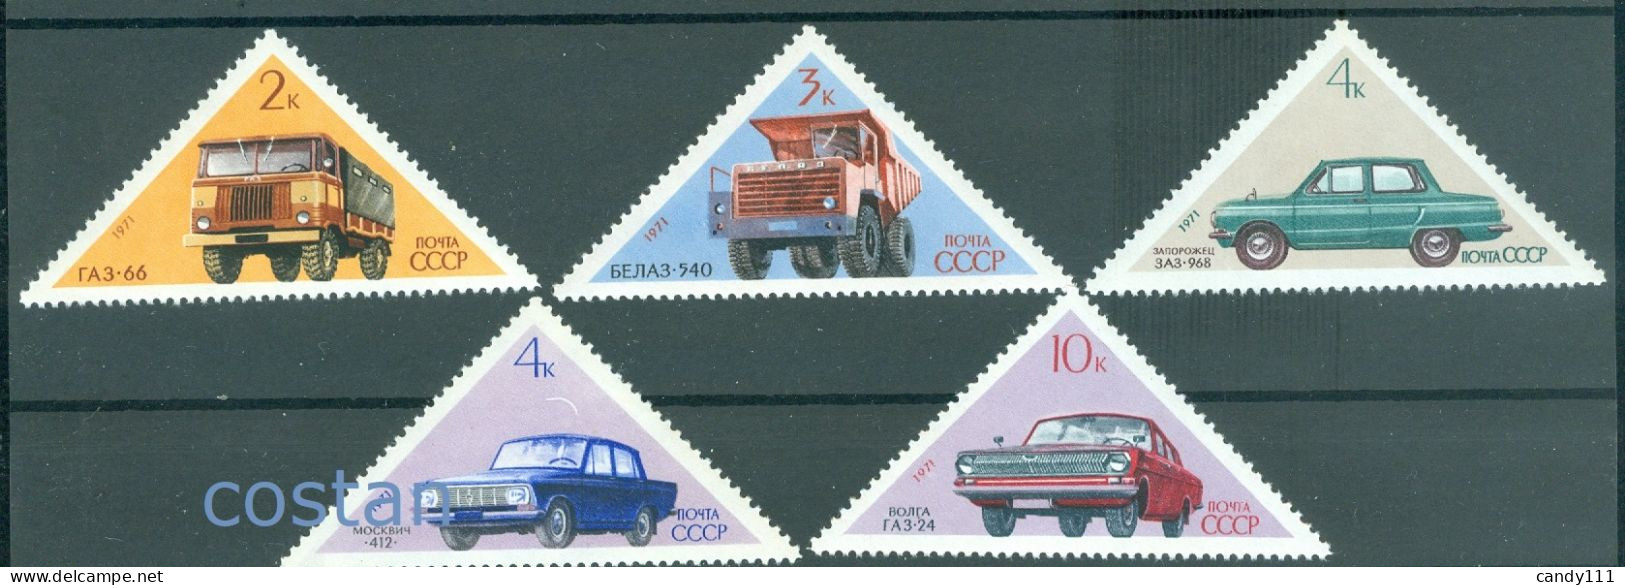 1971 Automobile,Volga,Moskvich,ZAZ Zaporozhets/Ukraine,GAZ Truck,Russia,3878,MNH - Unused Stamps